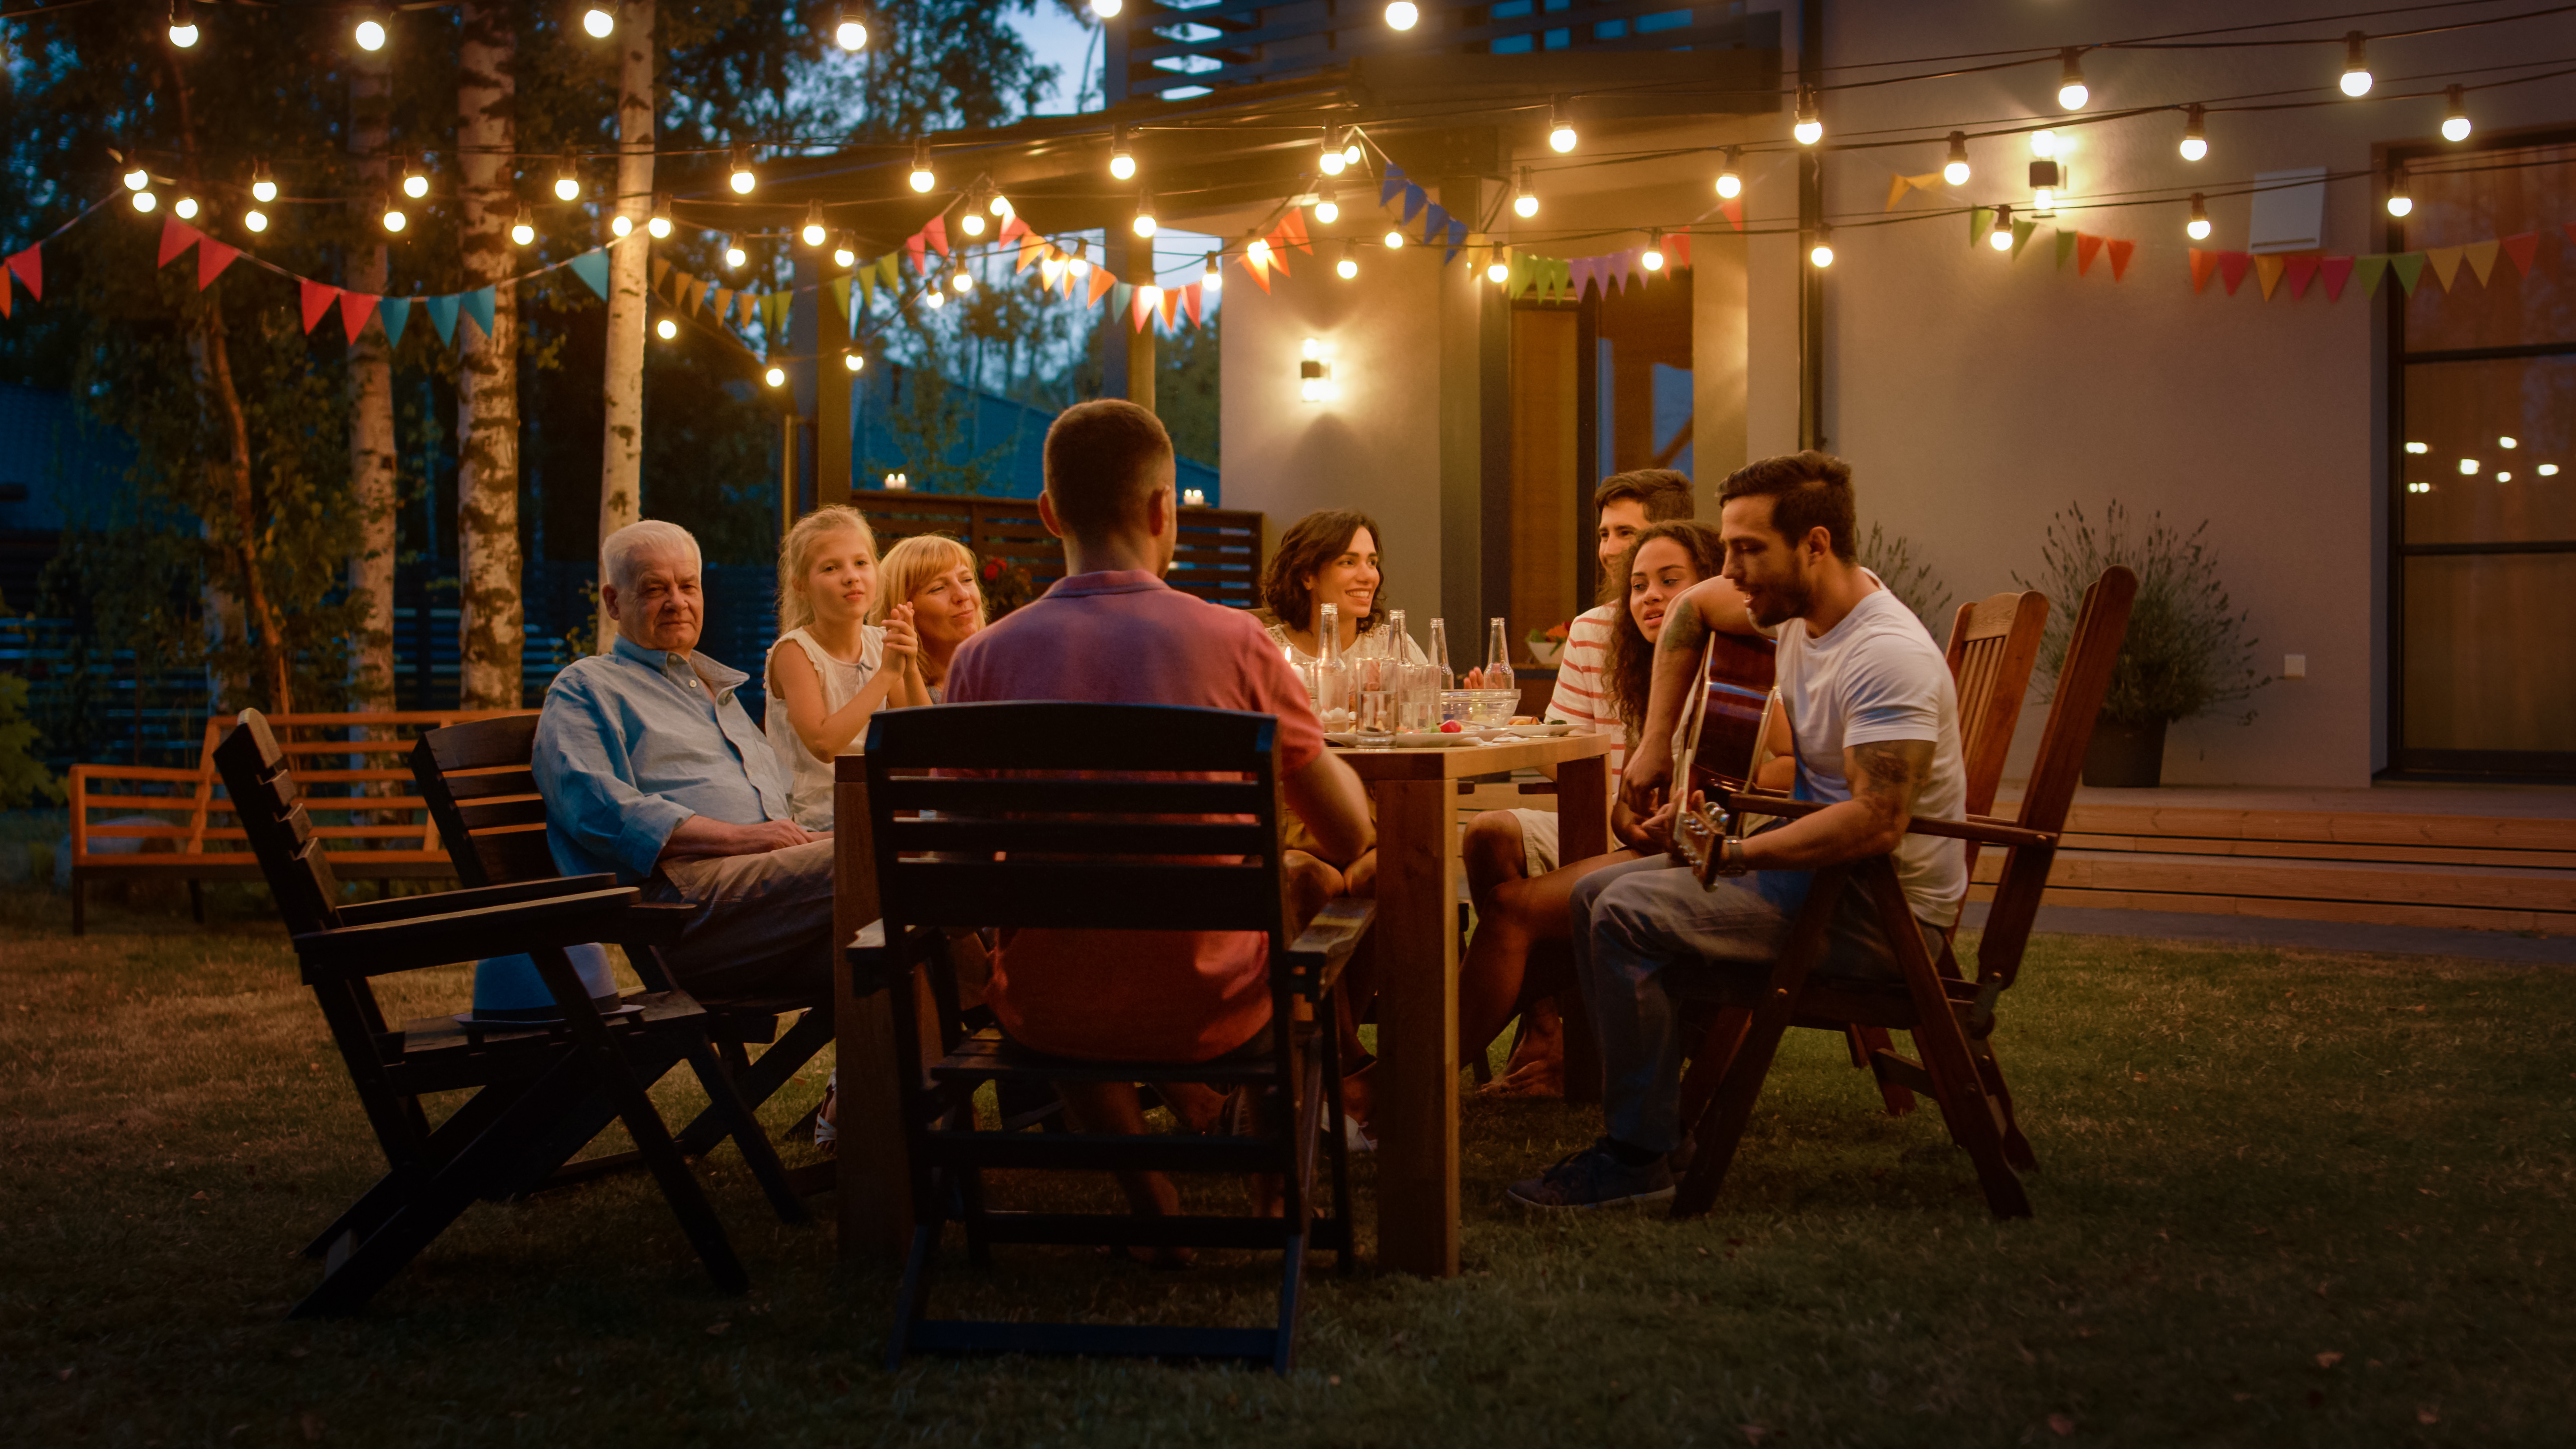 Eine Familie beim Abendessen im Freien | Quelle: Shutterstock